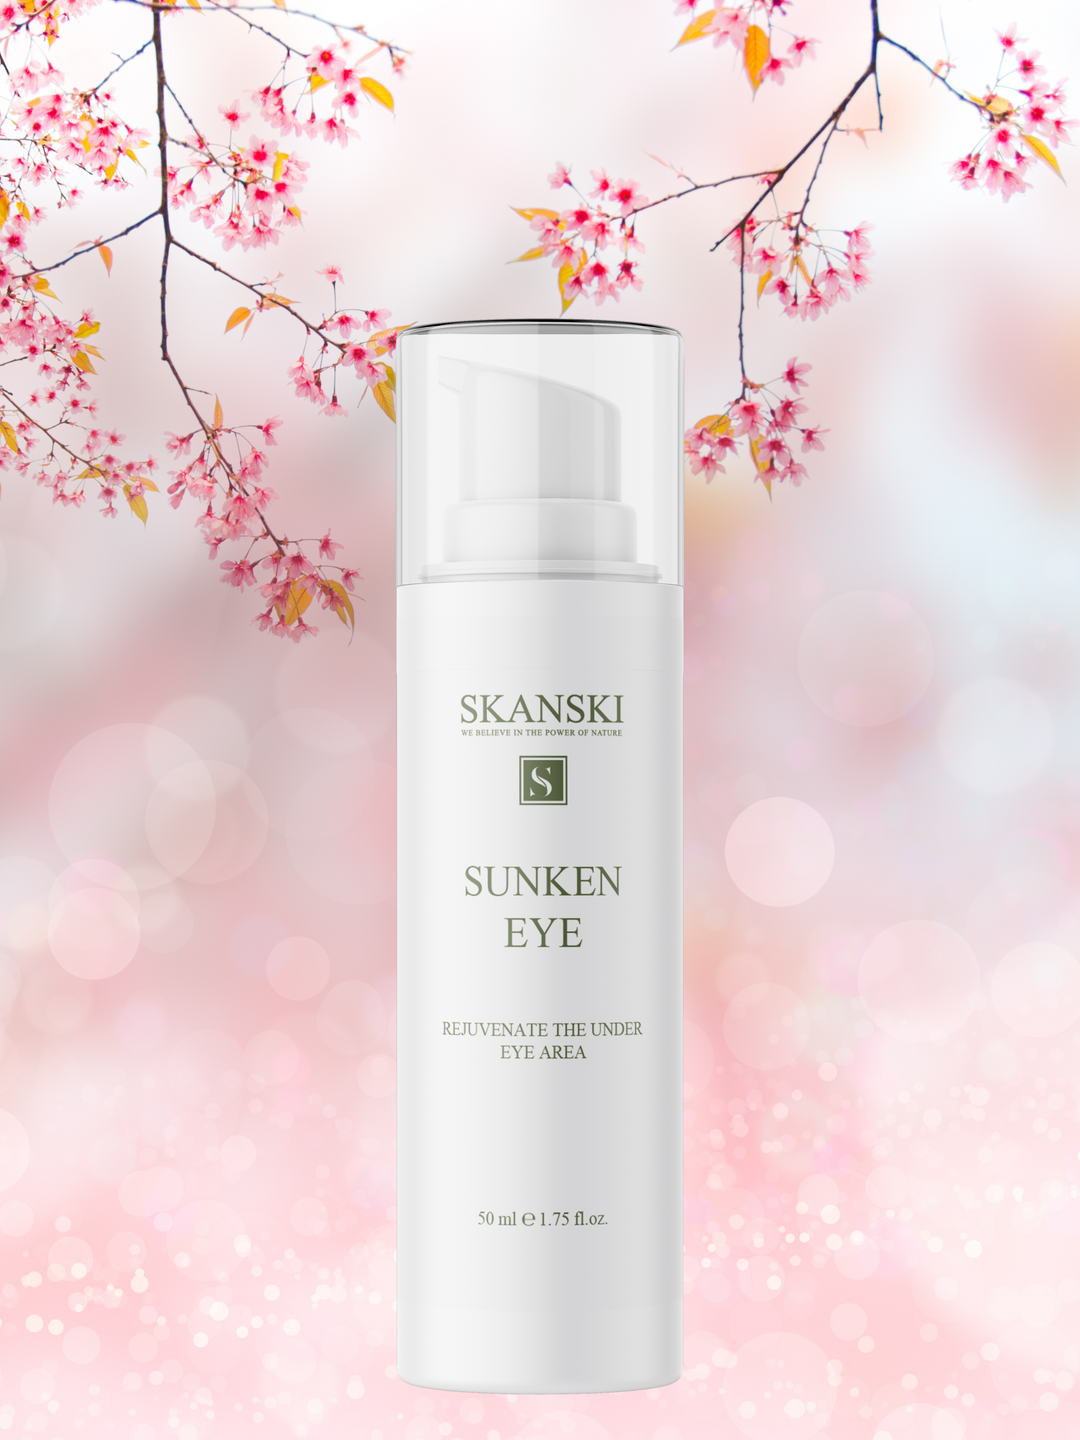 Sunken Eye cream from Skanski skin care